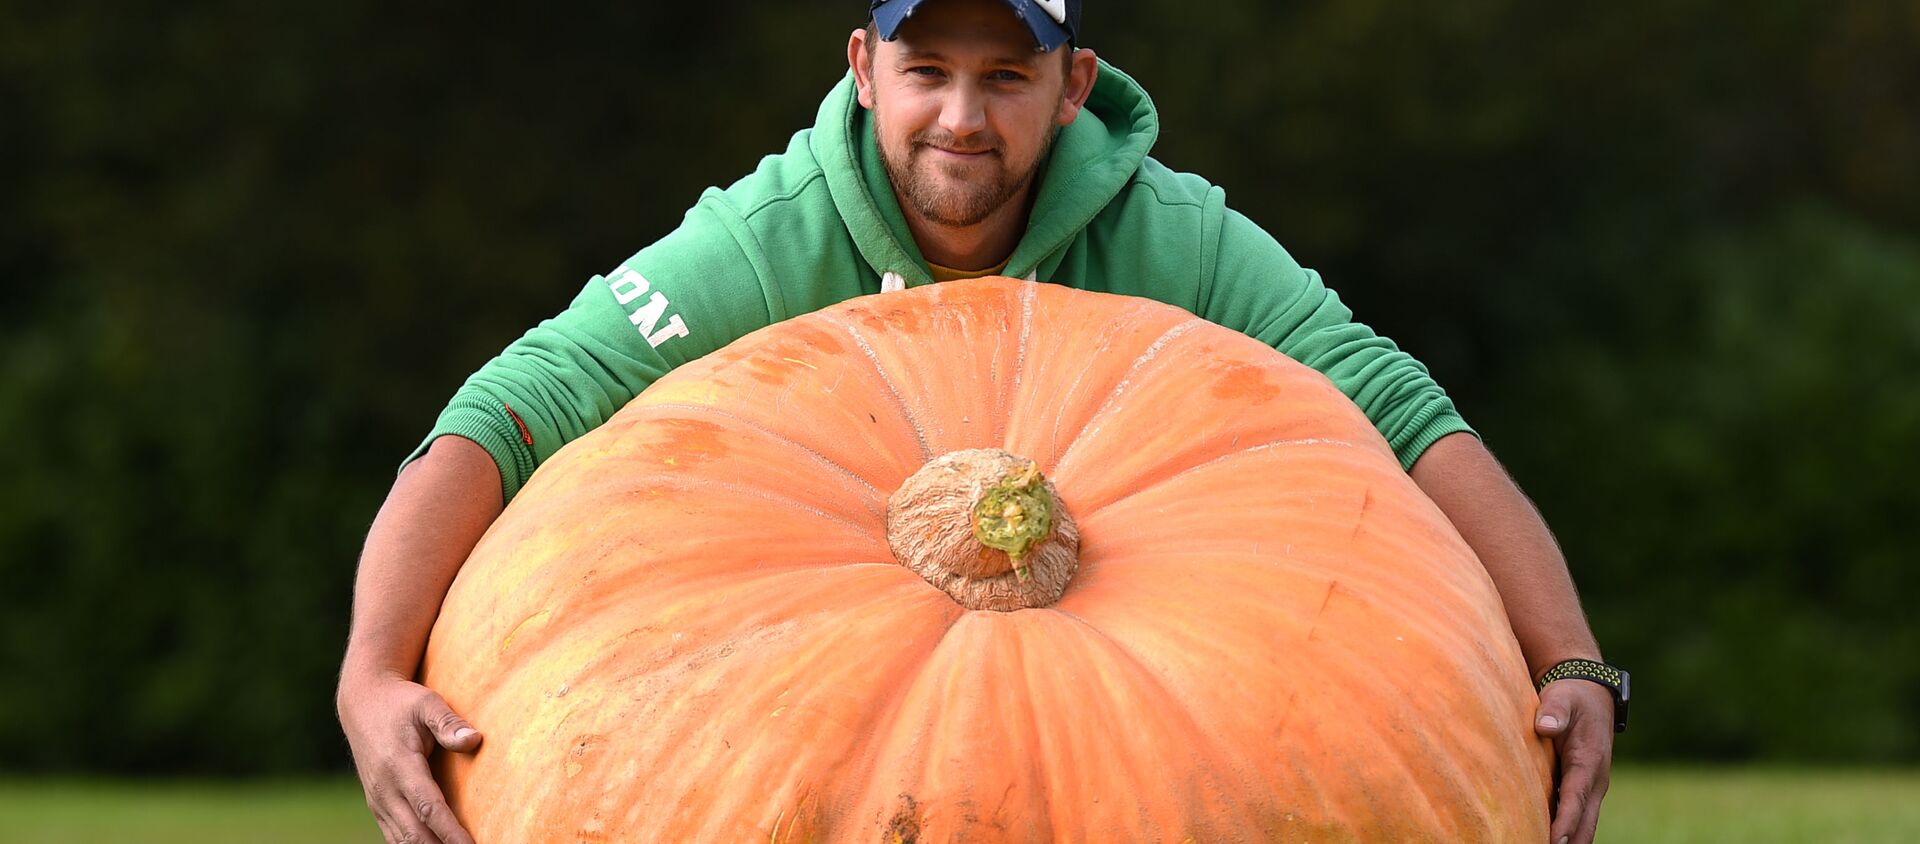  Ричард Манн со своей тыквой, весом 310,7 кг, которая выиграла в конкурсе овощей на Осенней выставке цветов в Харрогейте, 2017 год - Sputnik Казахстан, 1920, 22.10.2019